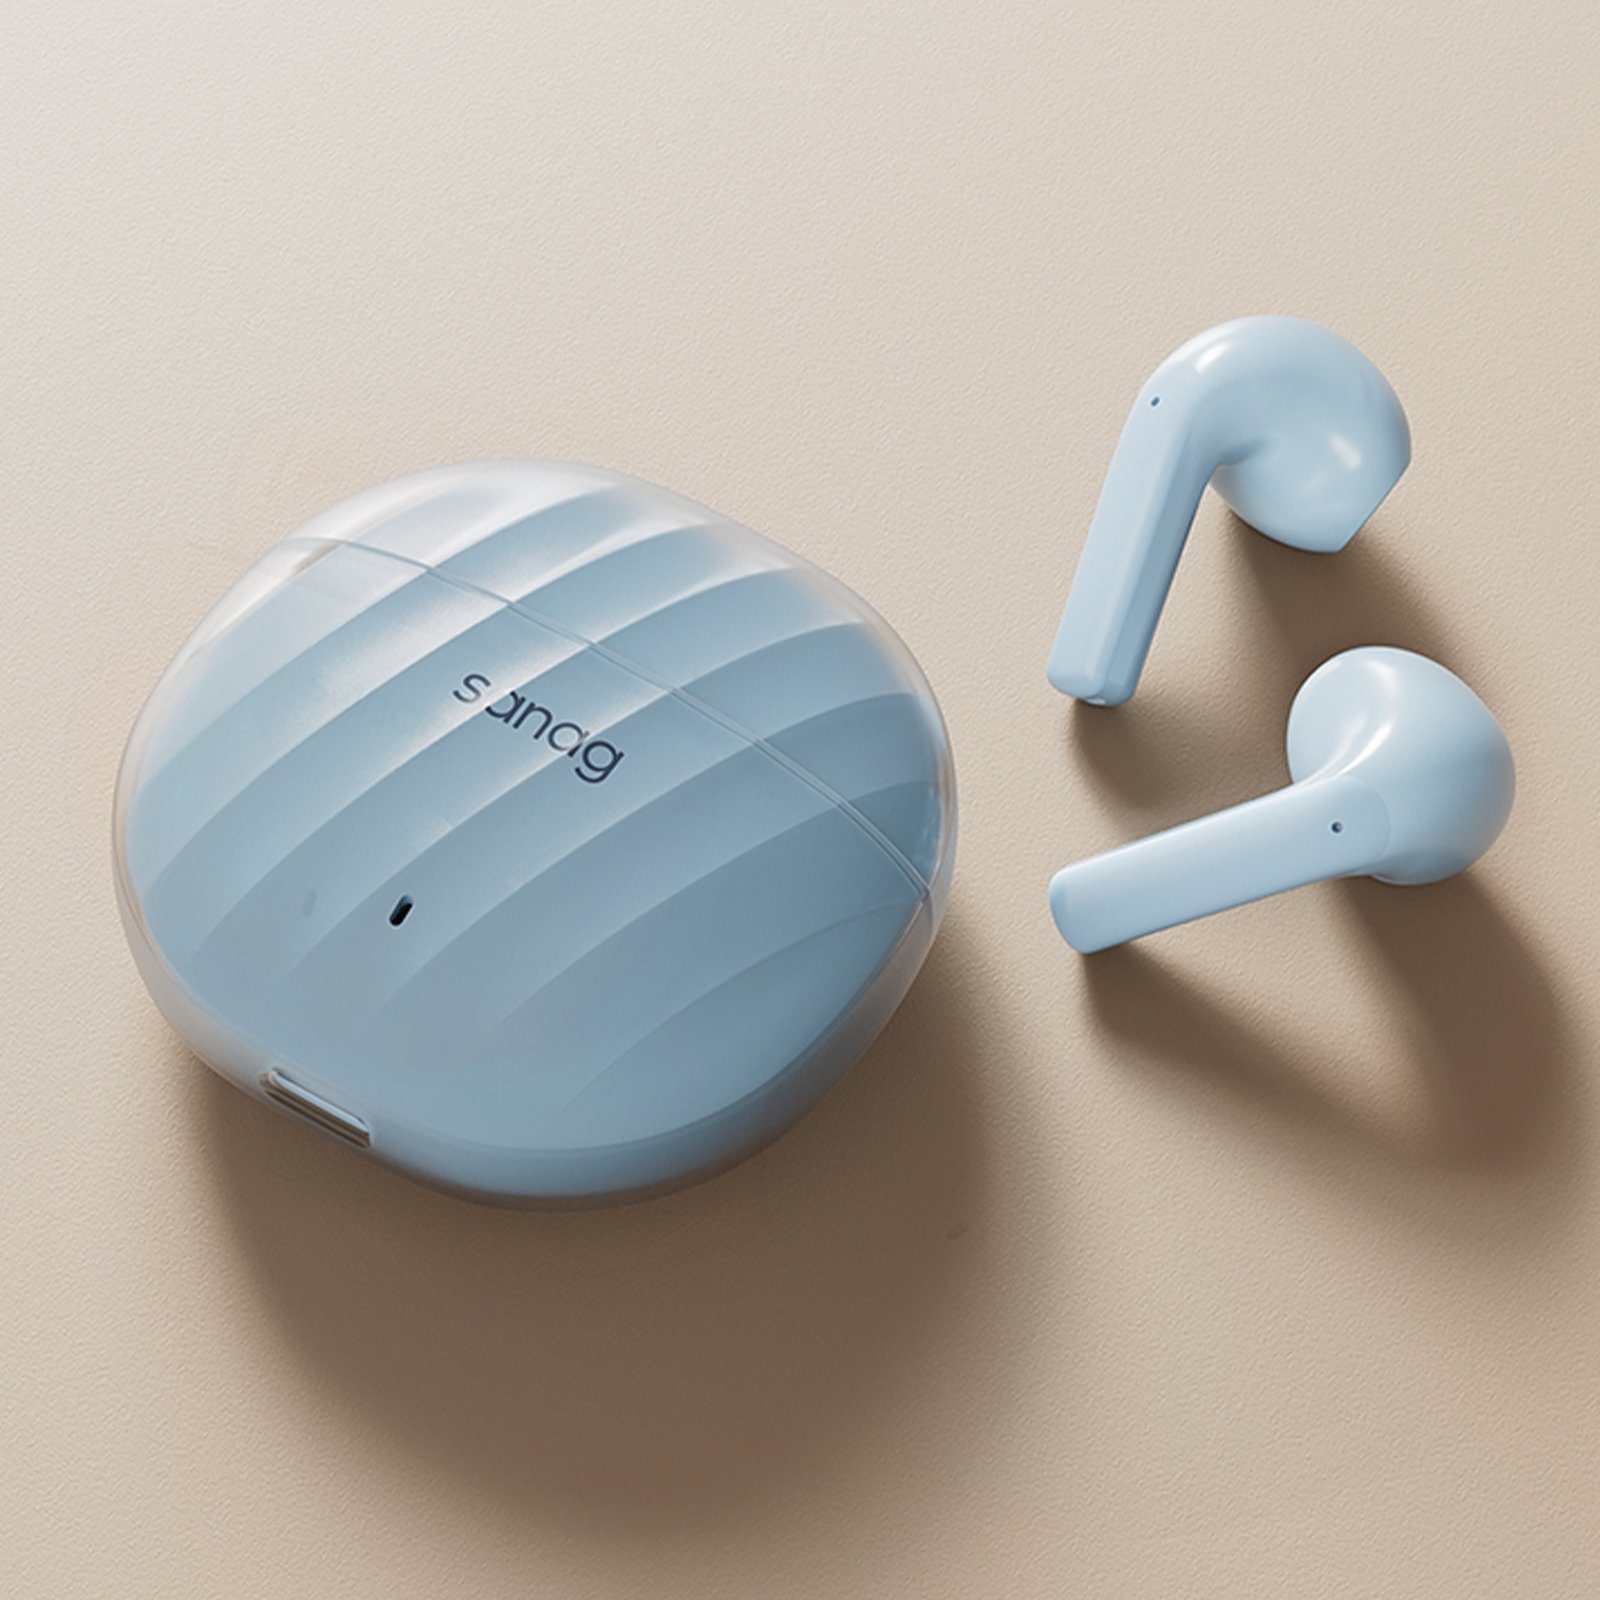 Yuede Bluetooth Kopfhörer Version 5.3, HD-Mikrofon Headphones, 28H Wireless In-Ear-Kopfhörer (ANC-Geräuschunterdrückung, Wasserdicht Nach IPX7, Surround Dolby Atmos) Blau